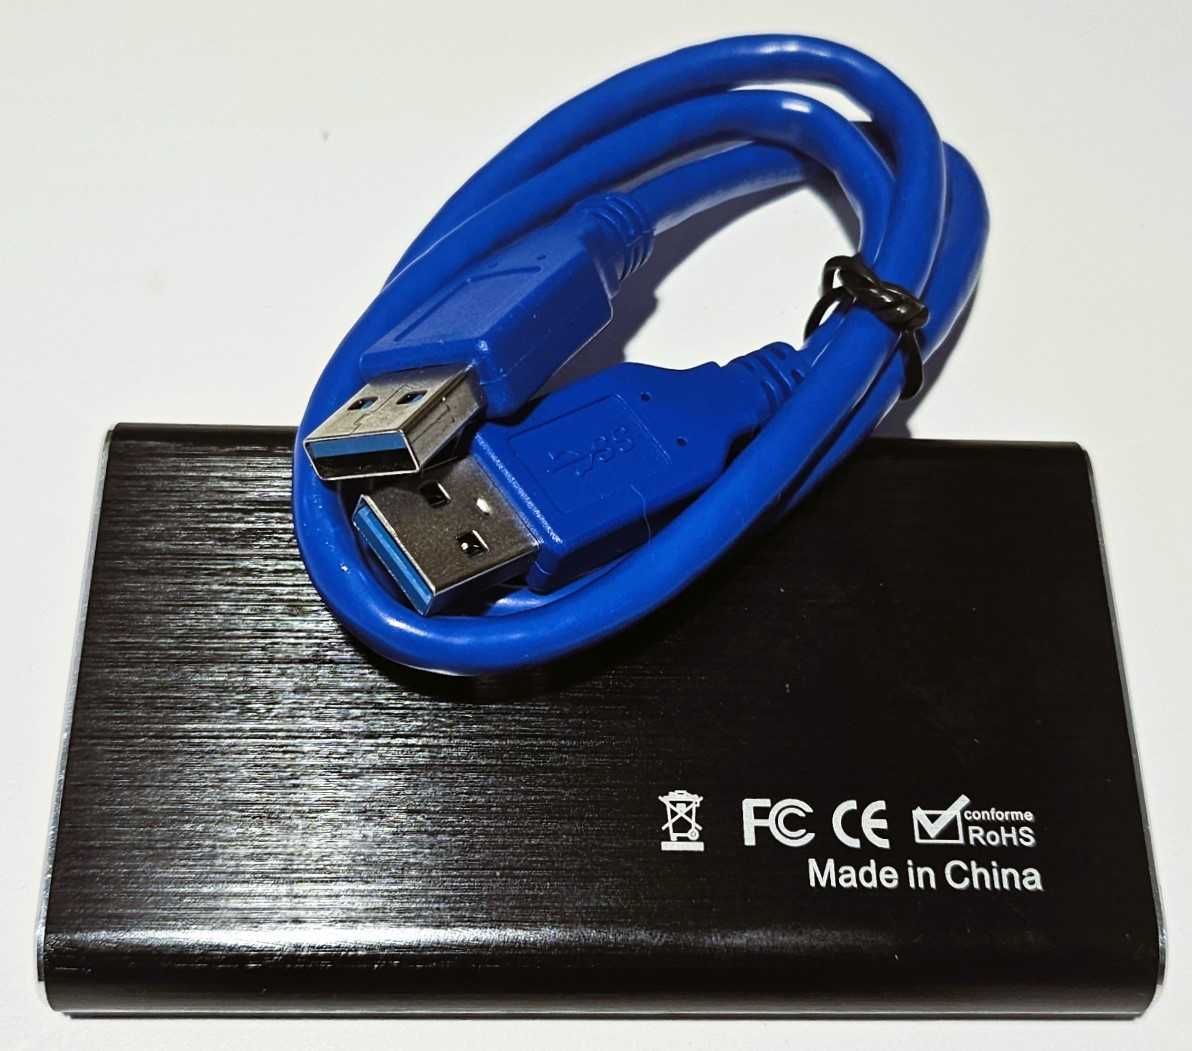 Grabber nagrywarka USB 3.0 - PC HDMI 4K OBS (przewód USB i 2 x HDMI)